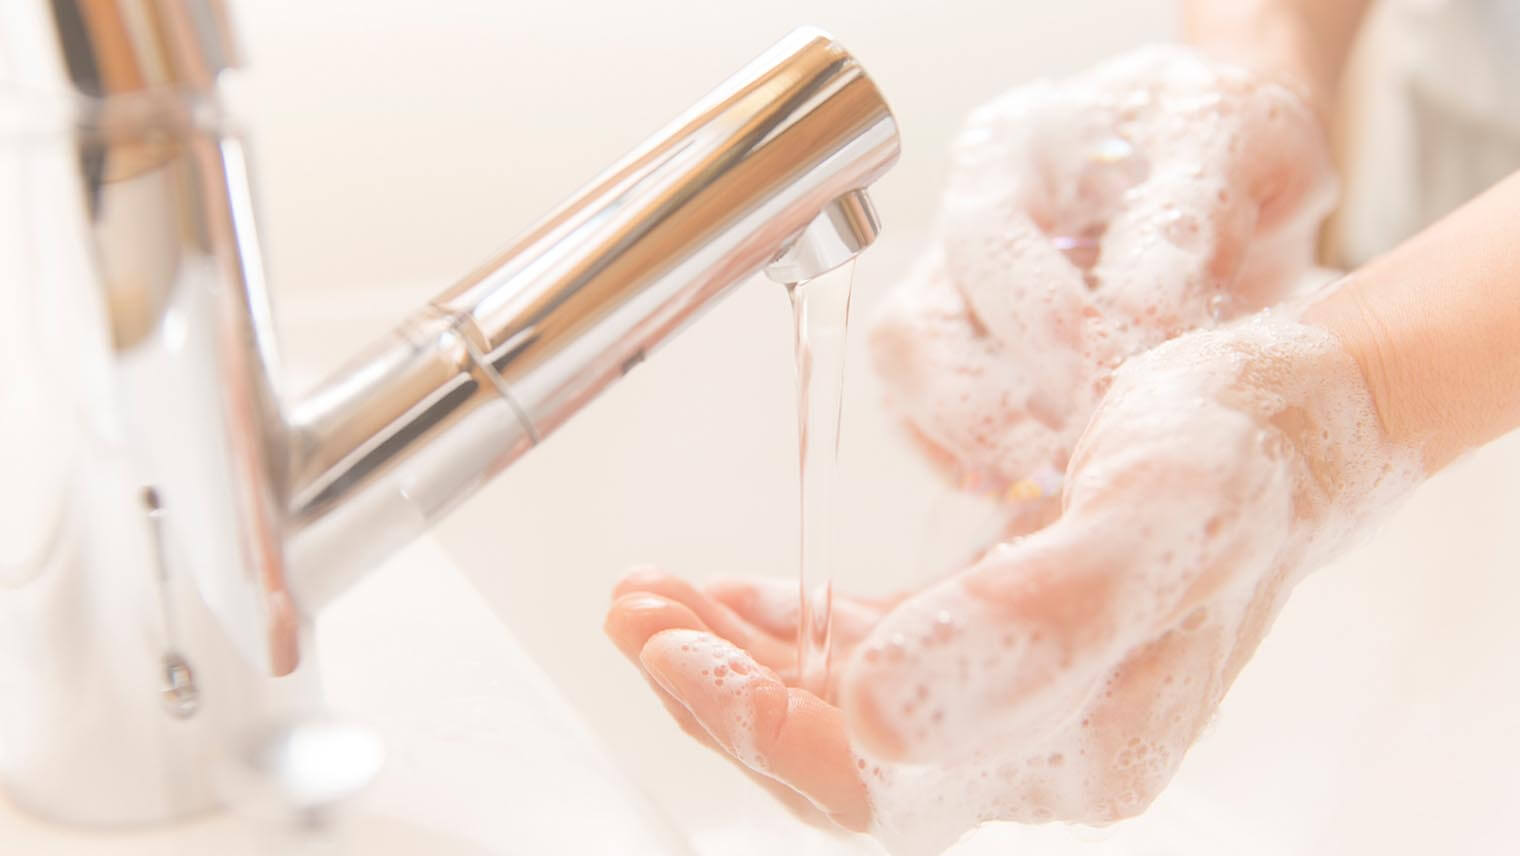 手洗い動画付き】感染予防のための「正しい手洗い方法」QA | Lidea(リディア) by LION